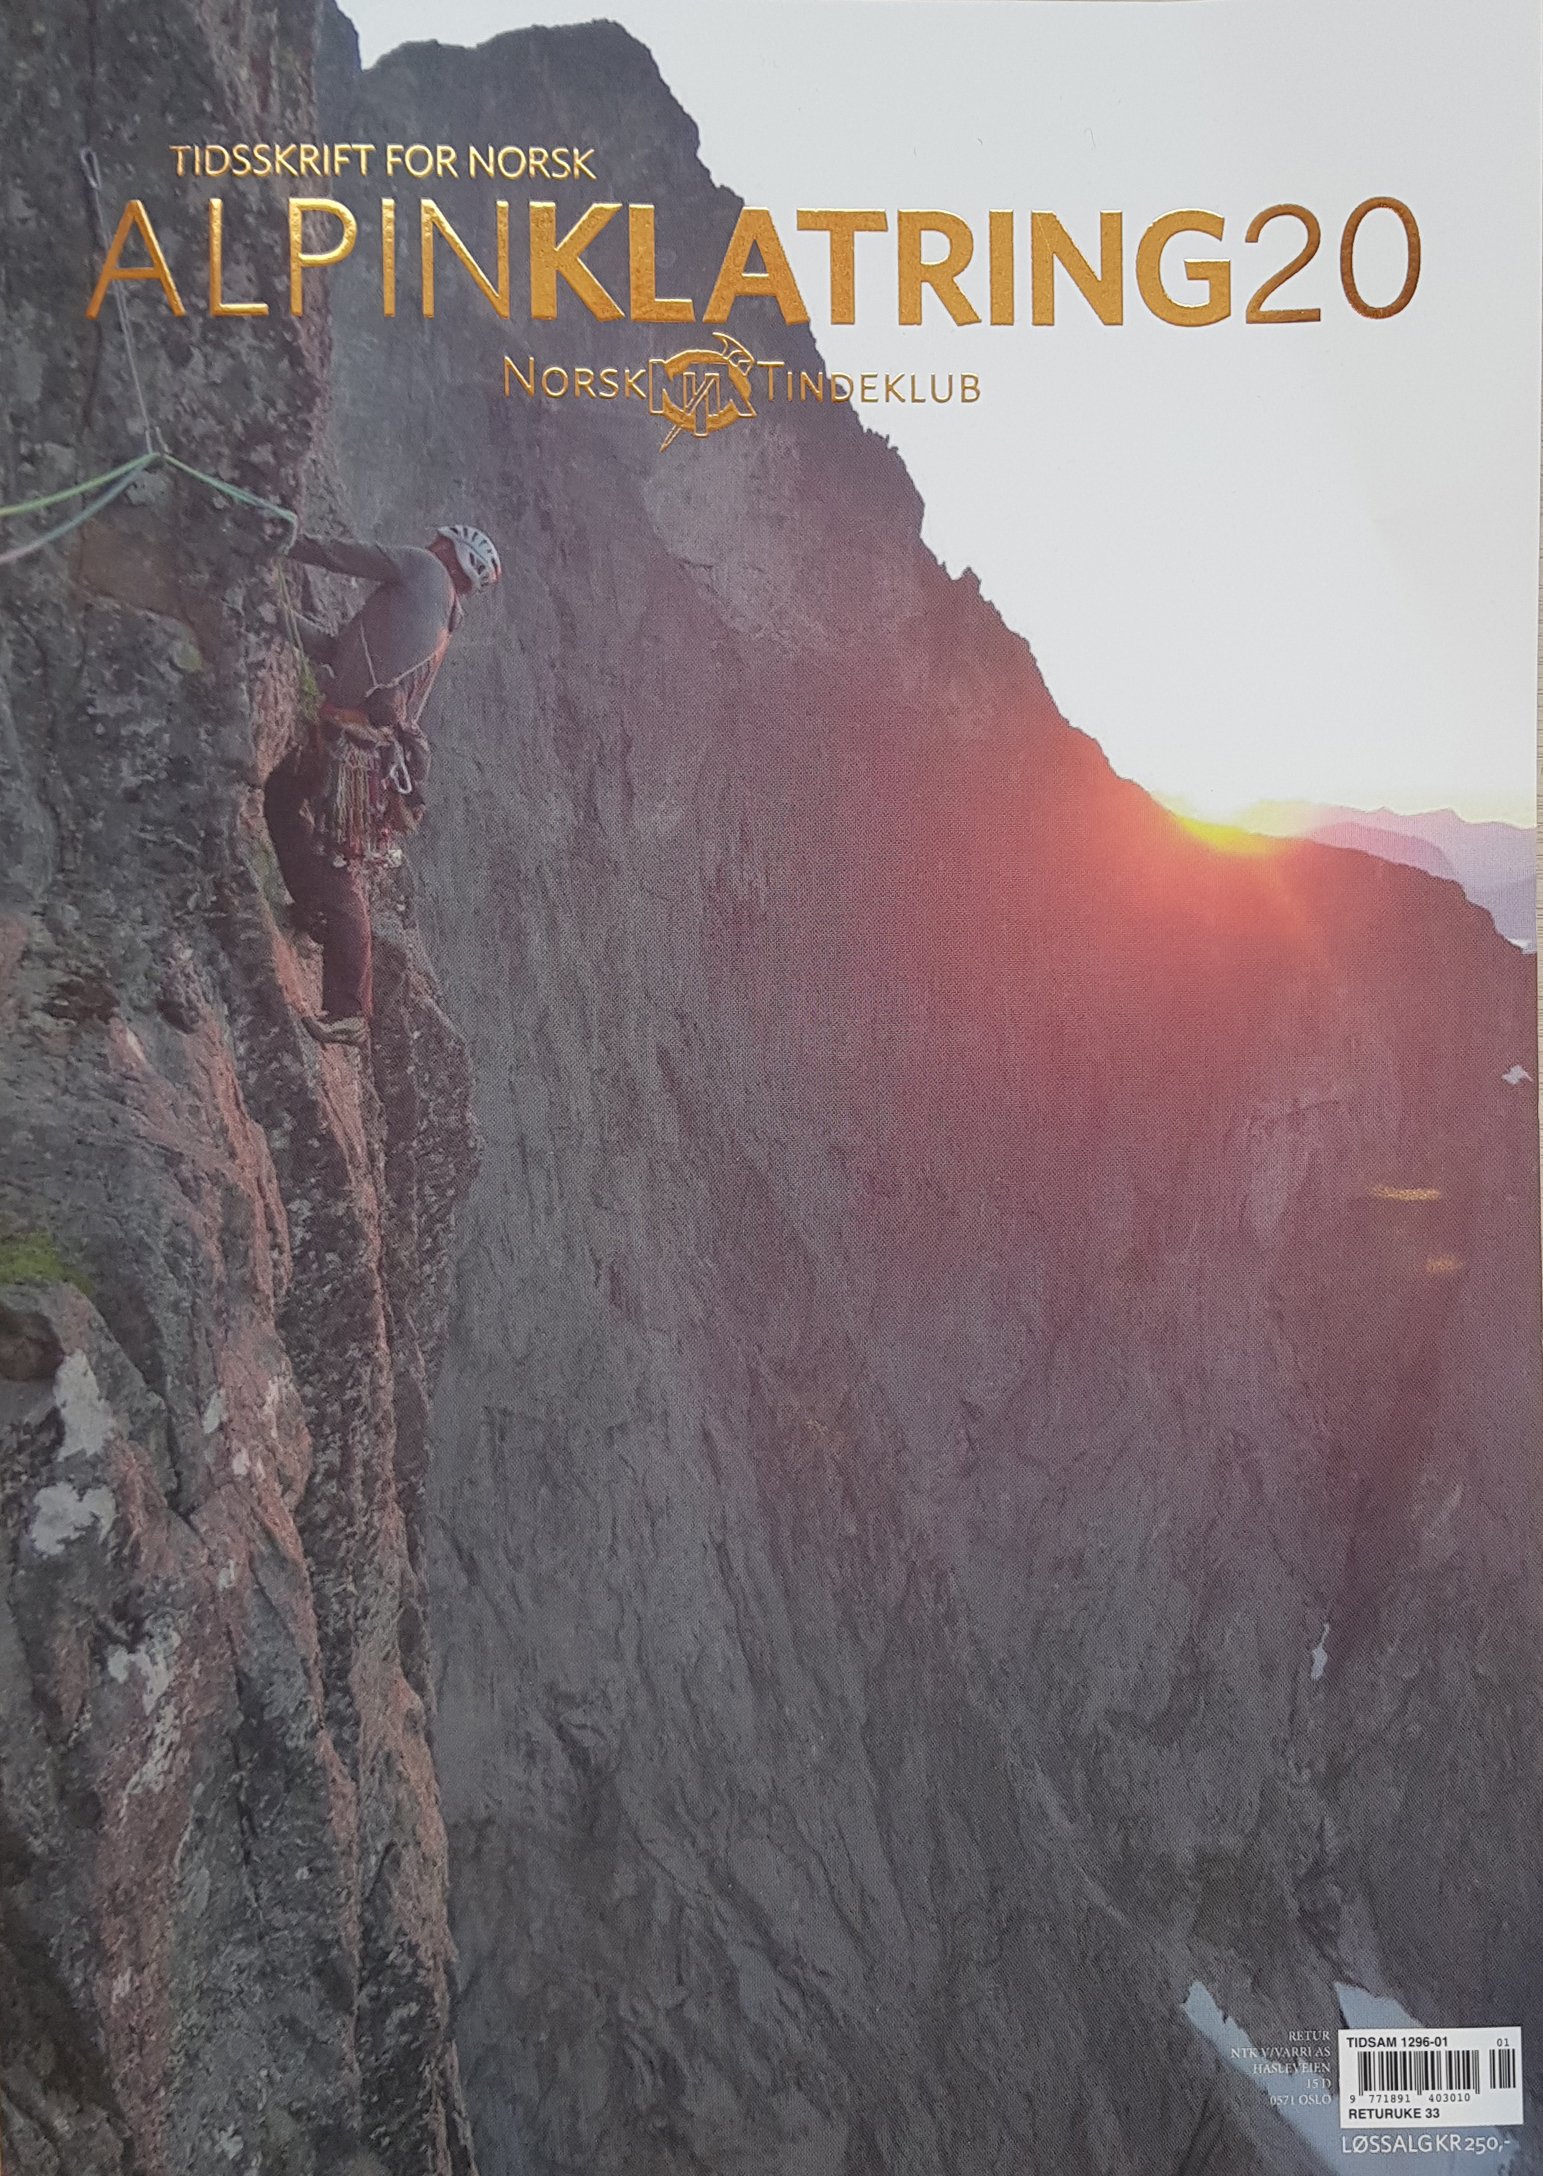 Tidsskrift for Norsk Alpinklatring 2020